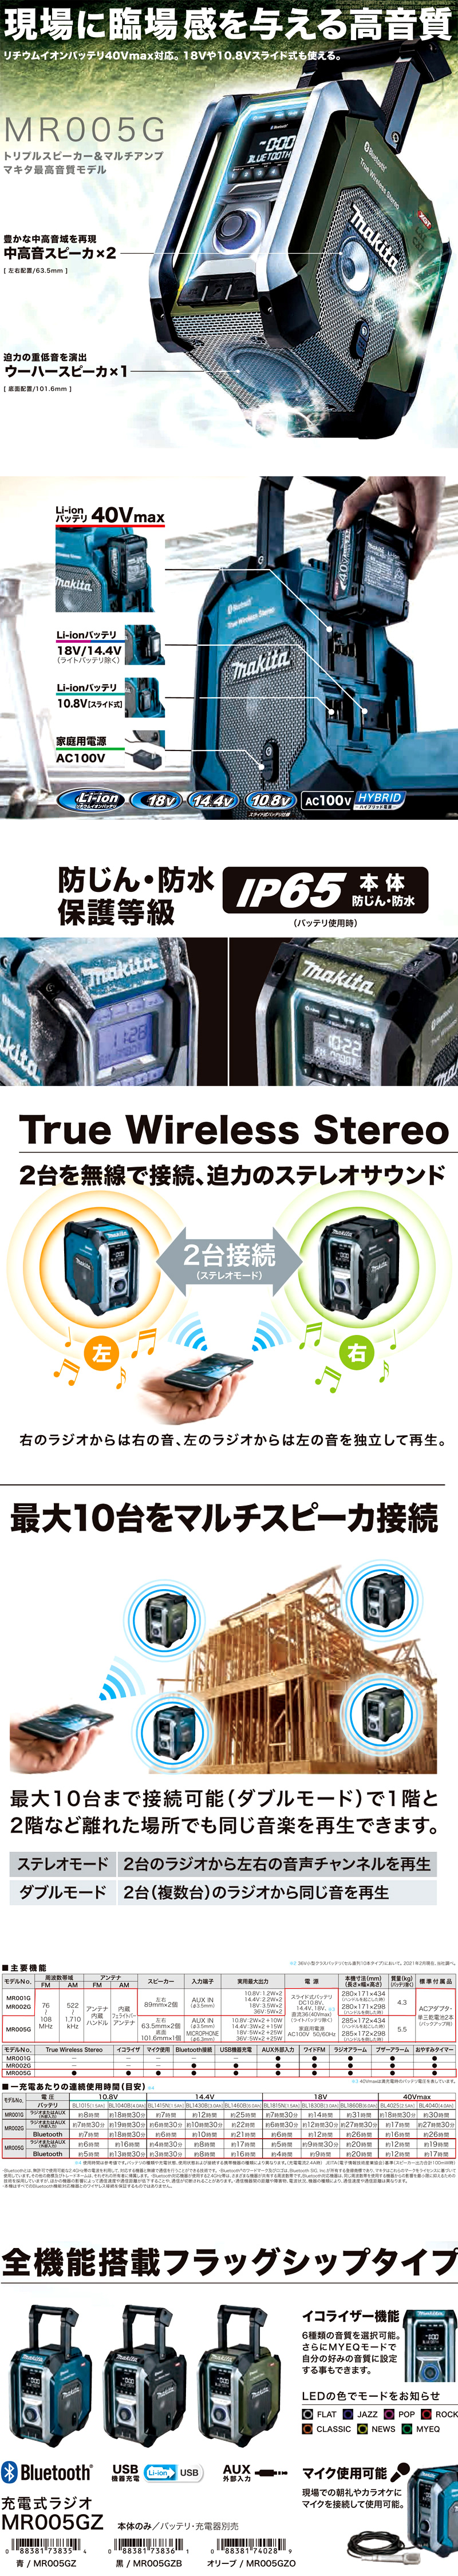 マキタ 充電式ラジオ【USB/Bluetooth対応】【重低音息域用ウーハー 